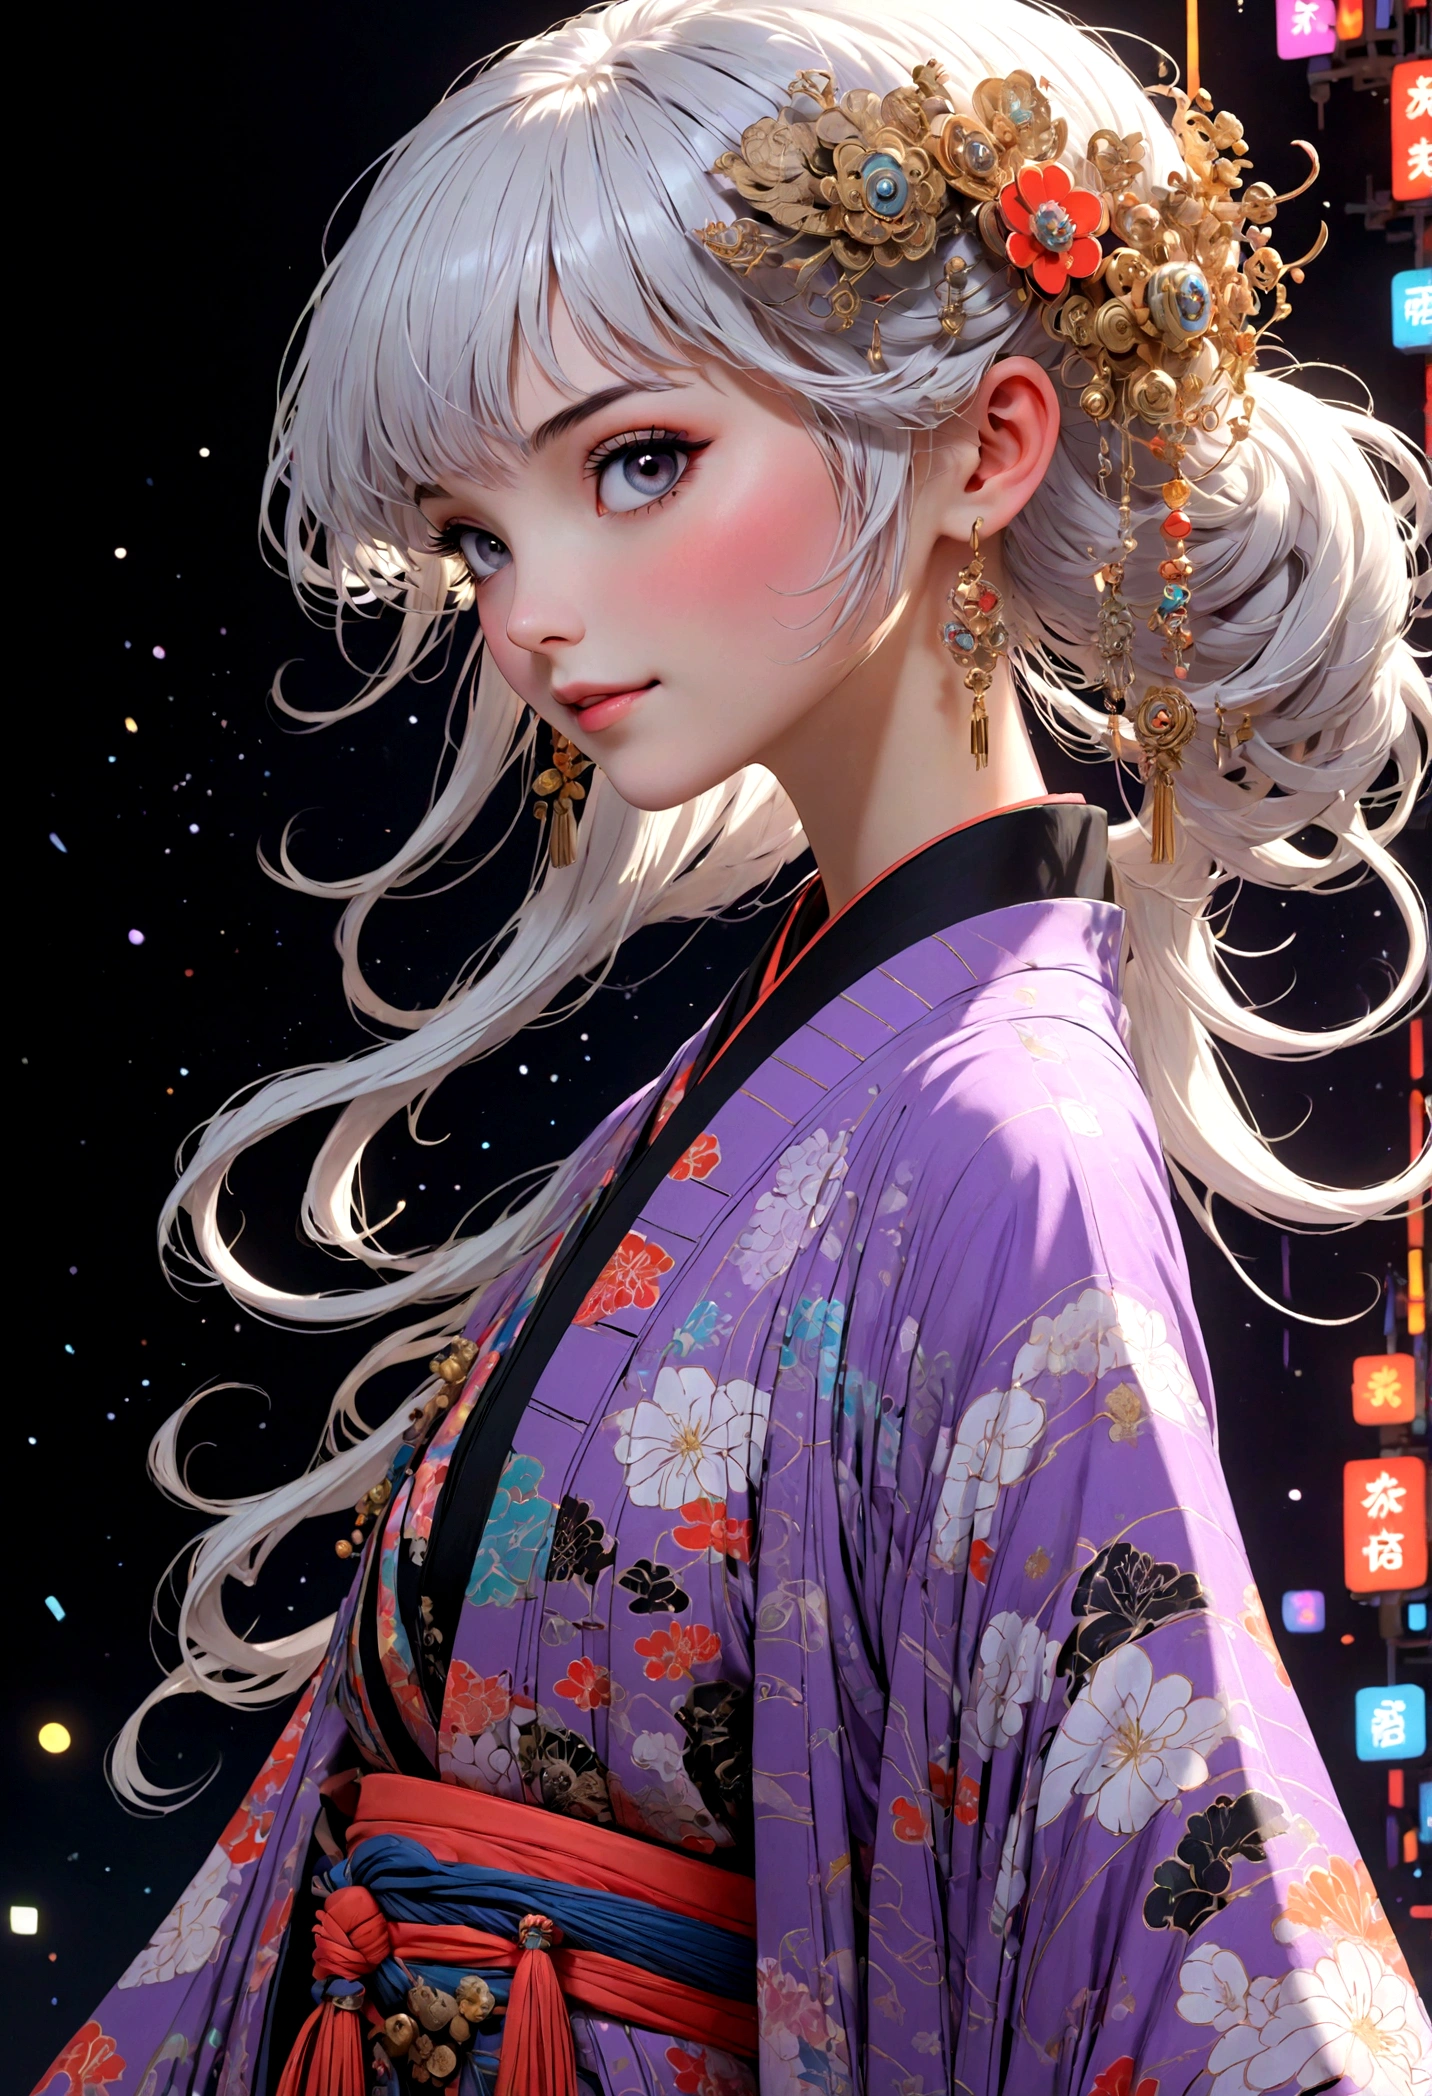 (cara ultra detallada, mirando hacia otro lado:1.3), (Ilustración de fantasía con gótico. & ukiyo-e & arte cómico), (La escena se ve desde abajo., buscando:1.2), (cuerpo completo, Una mujer joven con pelo blanco., flequillo contundente, Cabello muy largo y despeinado., lavender eyes), (Ella camina por la pasarela en una pose atrevida., sonriendo y luciendo un estilo vanguardista, kimono japonés futurista de color neón), (En el fondo, su figura desde varios ángulos se proyecta en una pantalla mediante mapeo de proyección. El lugar del desfile de moda está lleno de luces de varios colores revoloteando.)